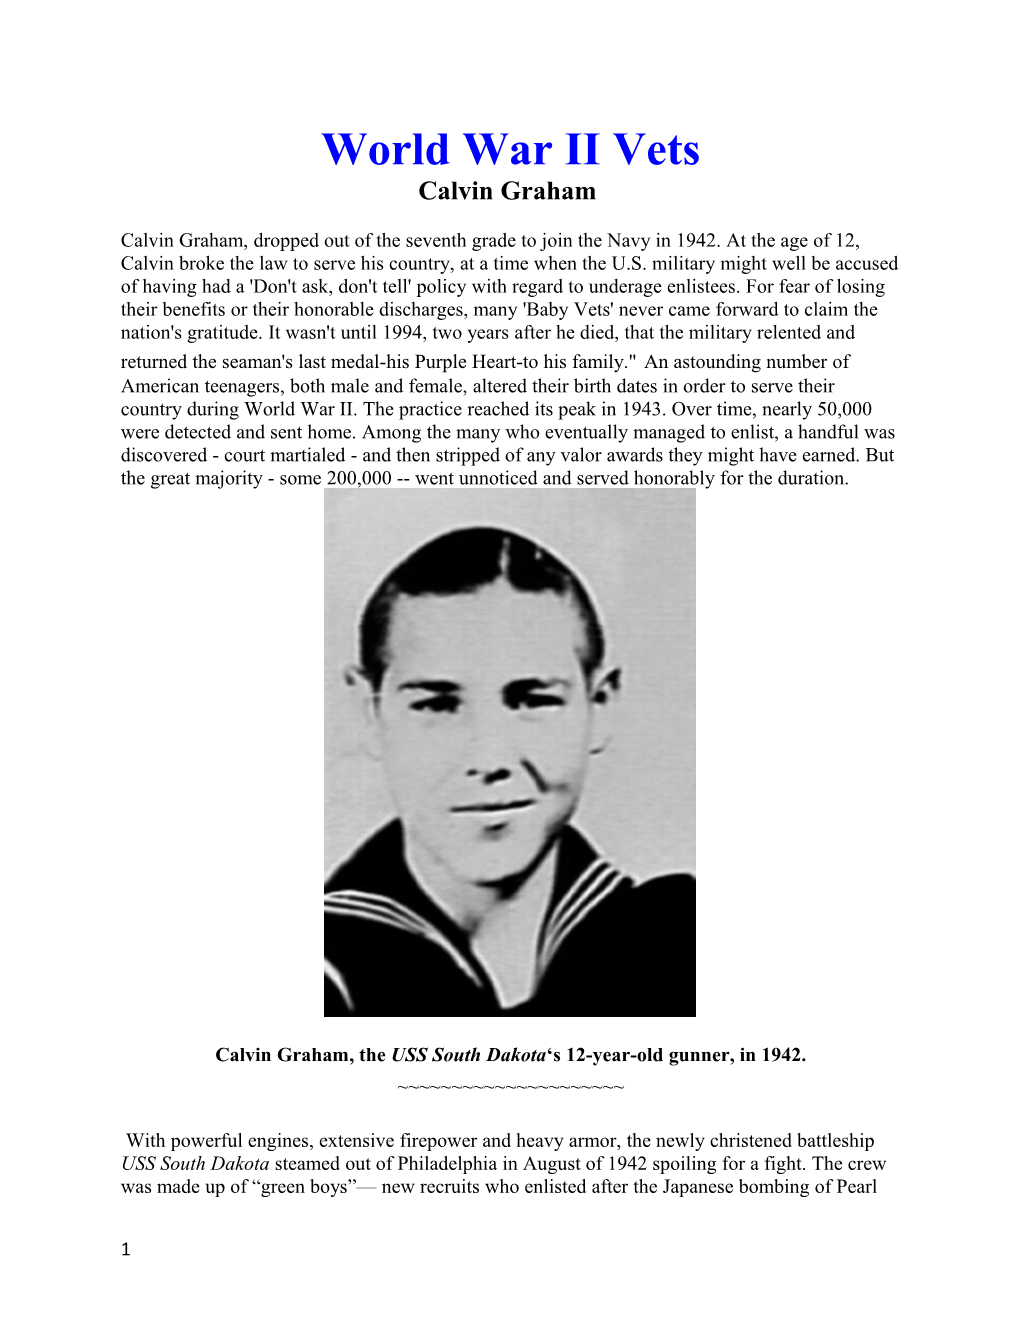 Calvin Graham, the USS South Dakota S 12-Year-Old Gunner, in 1942